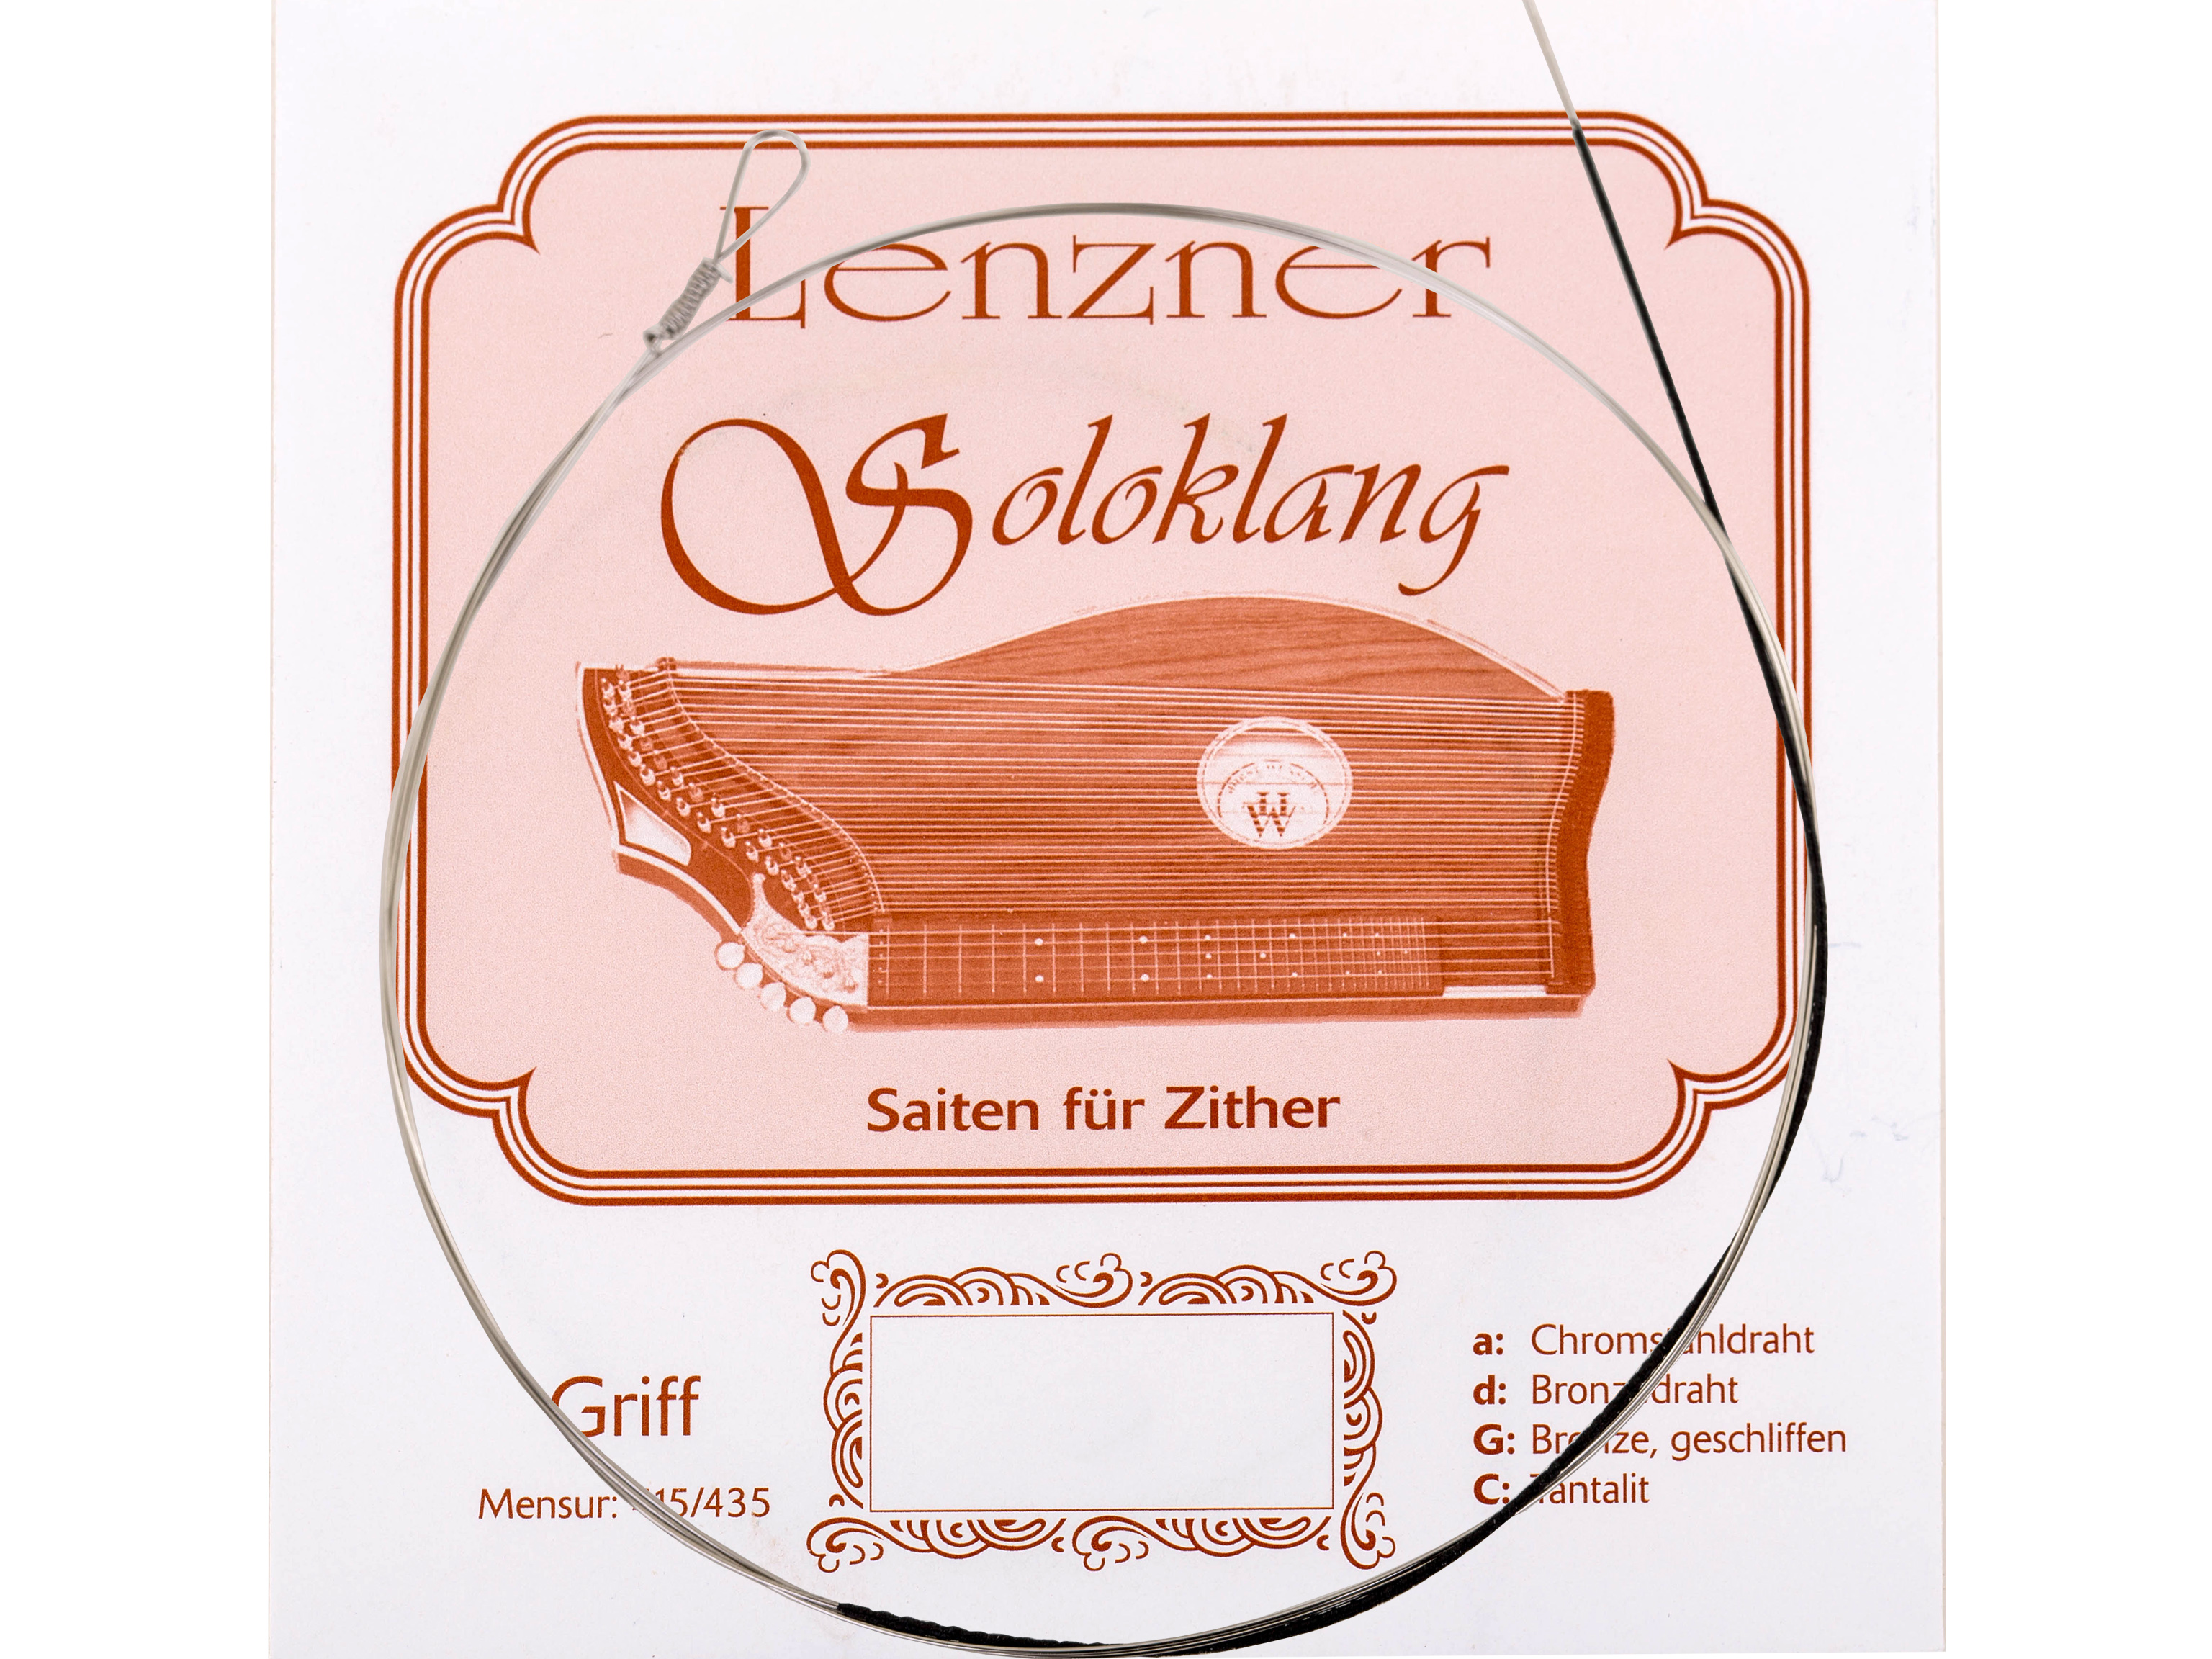 Lenzner G 5513 Zithersaite Soloklang Griffbrett